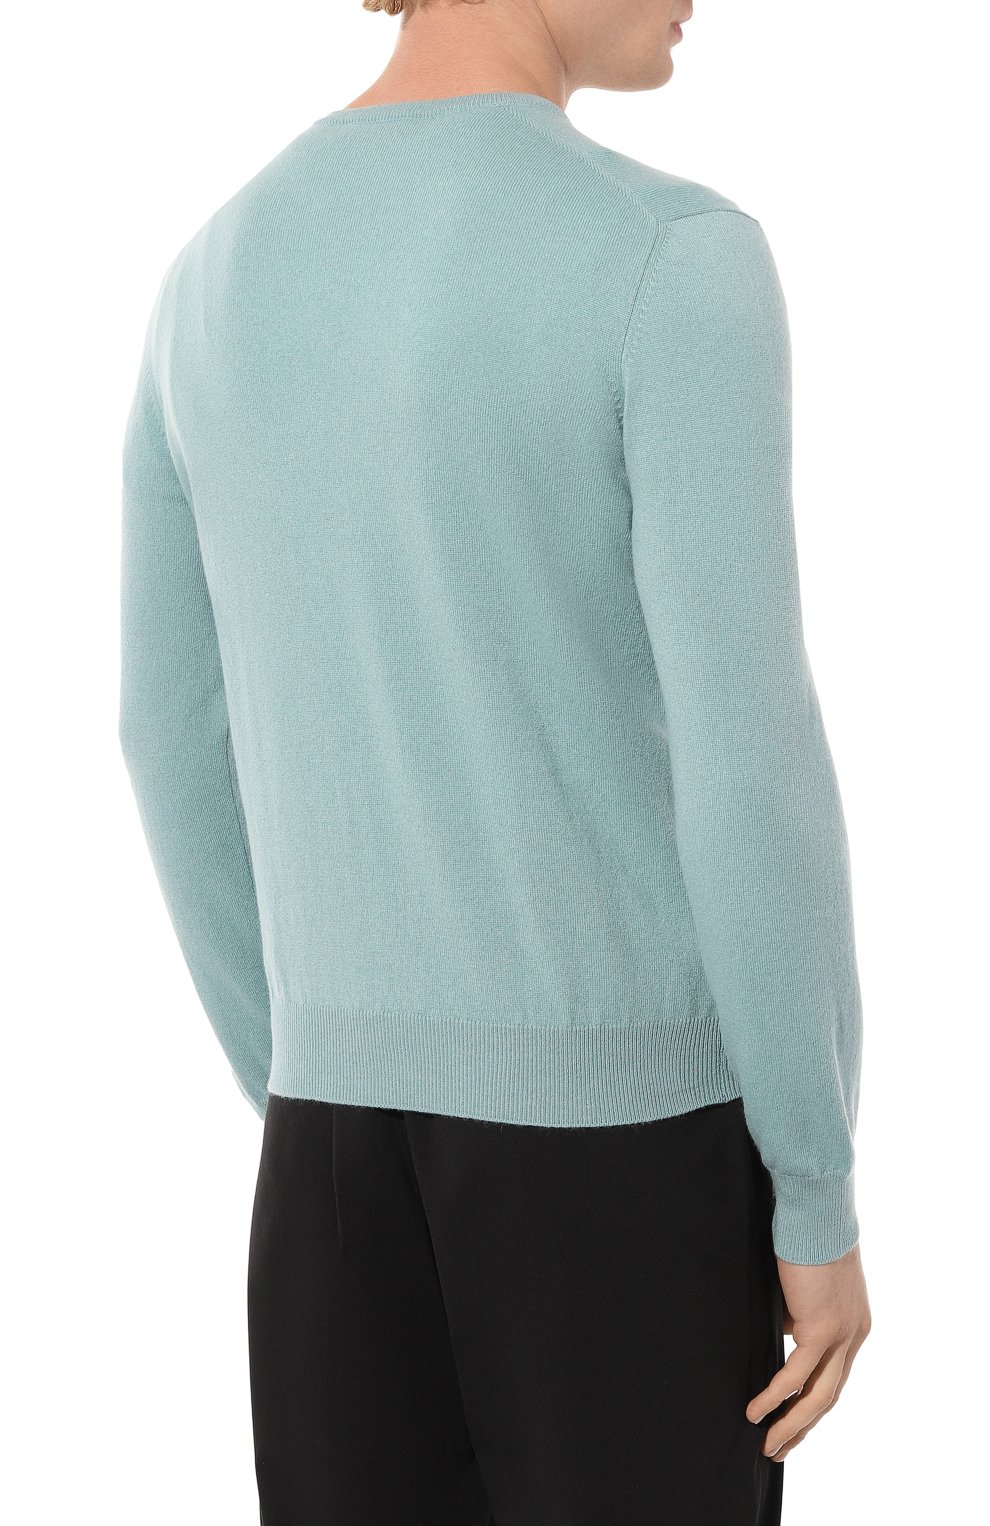 Кашемировый пуловер Gran Sasso 55115/15590, цвет голубой, размер 48 55115/15590 - фото 4